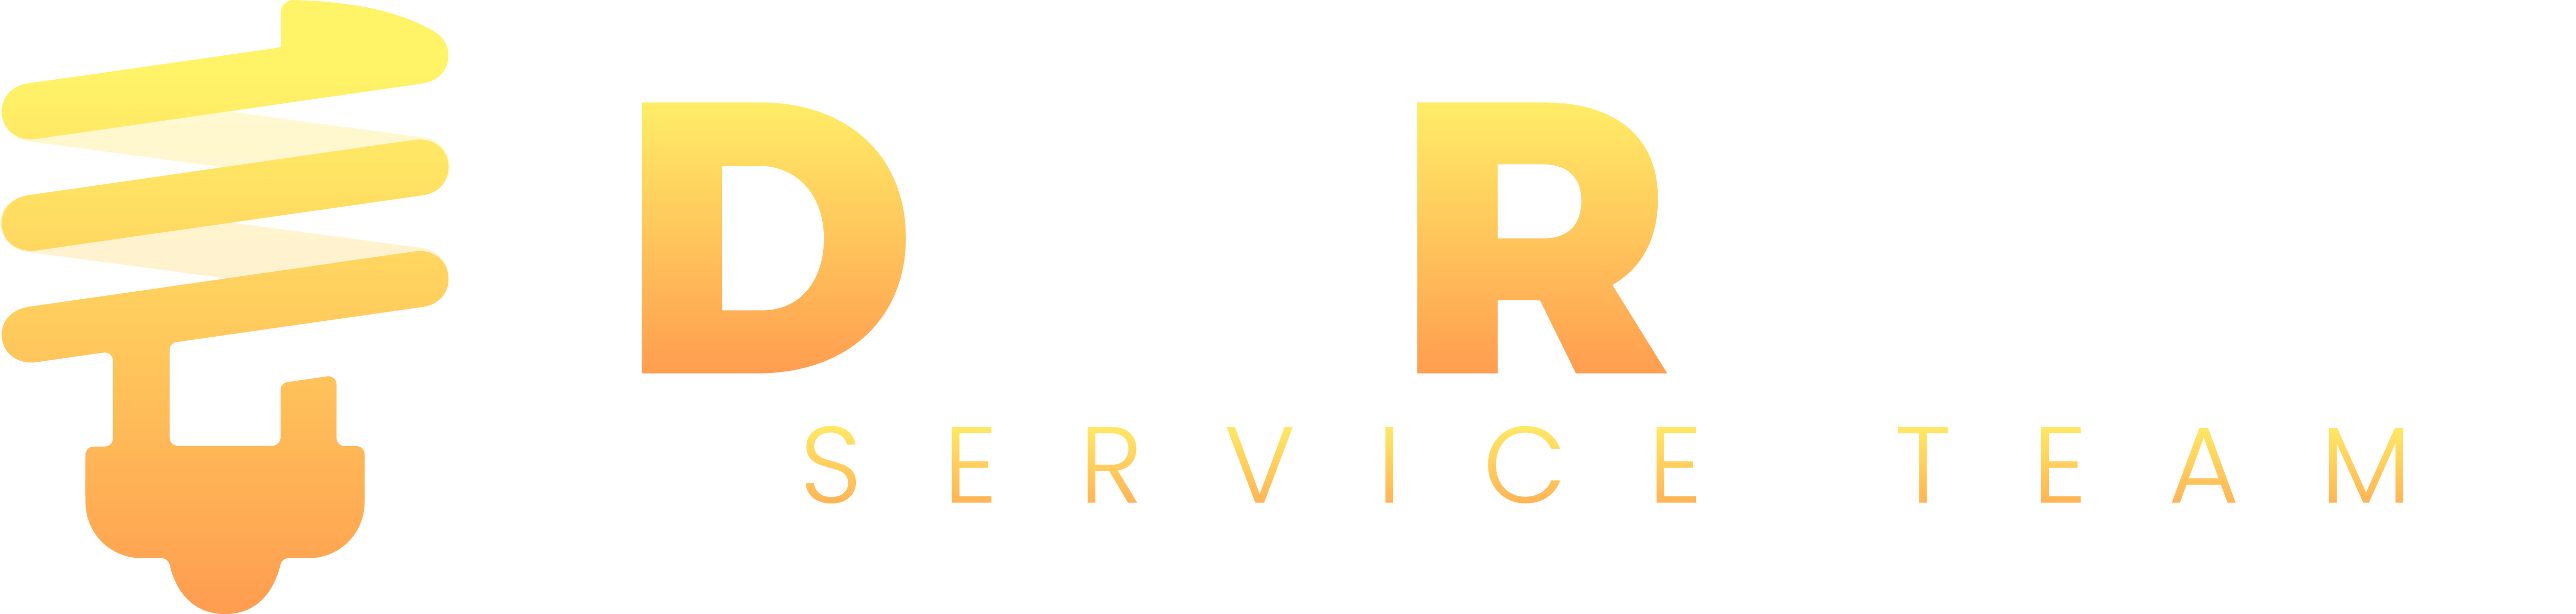 DevRoom logo